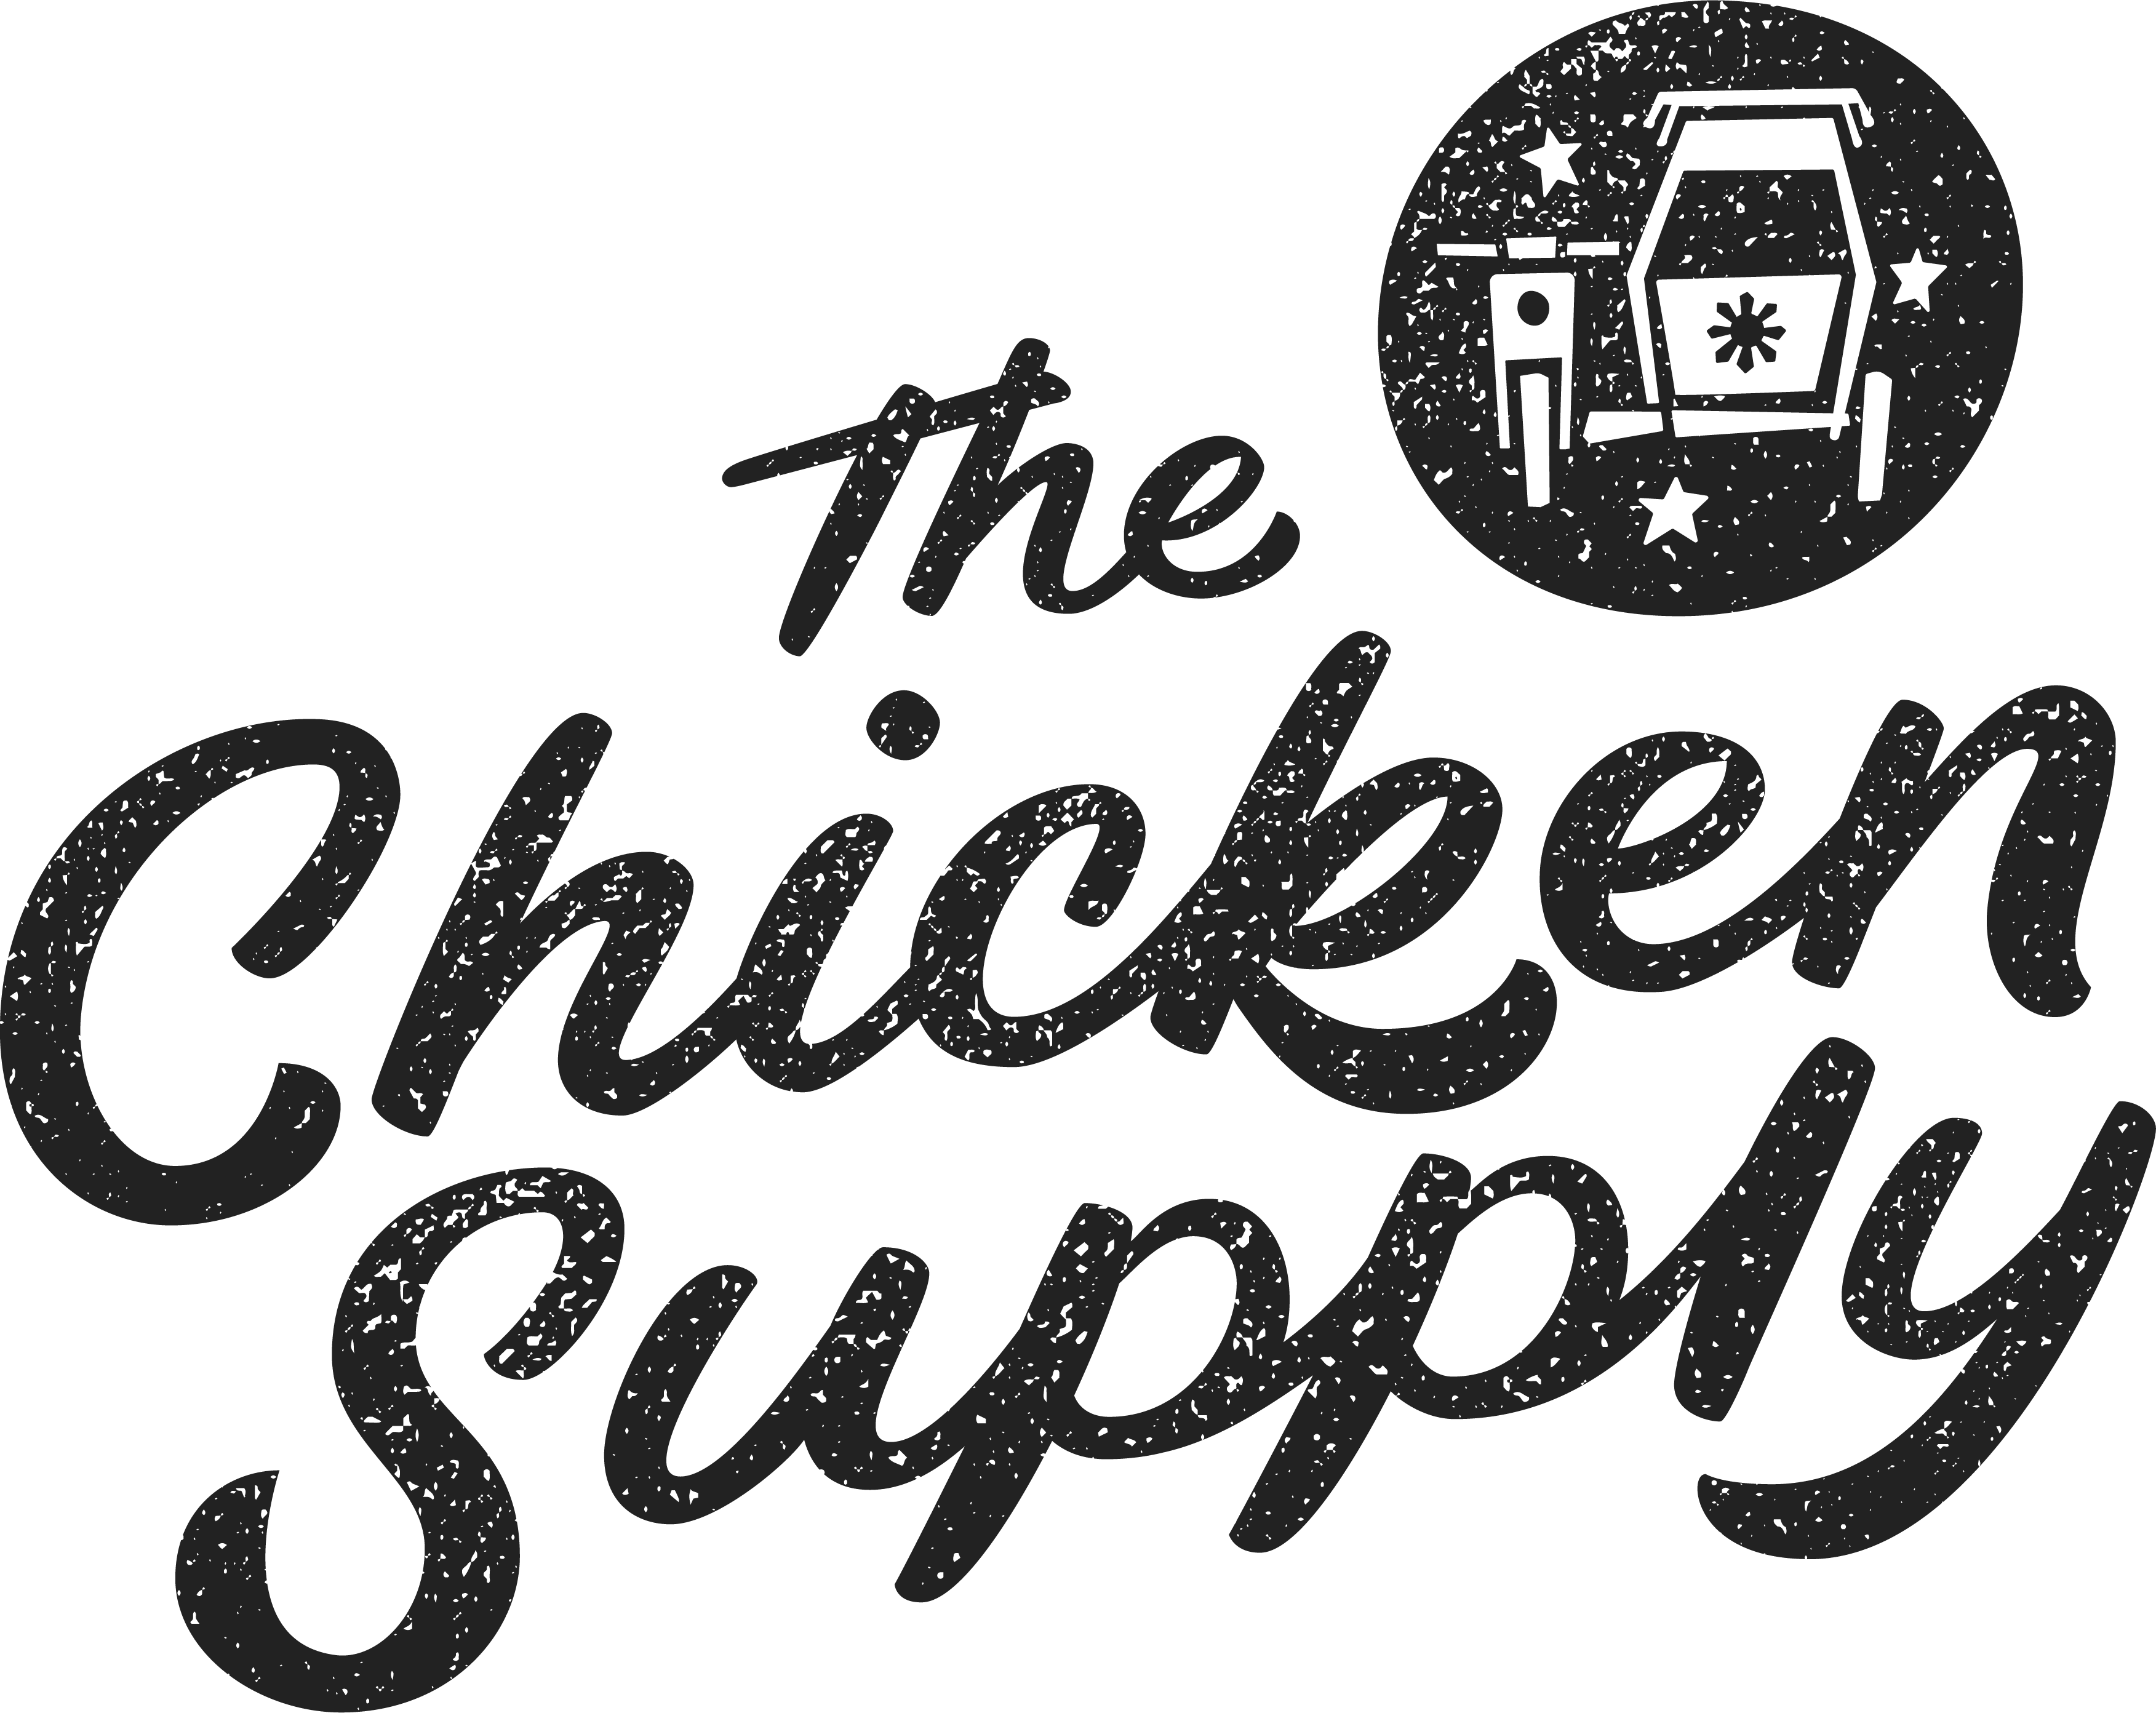 The Chicken Supply